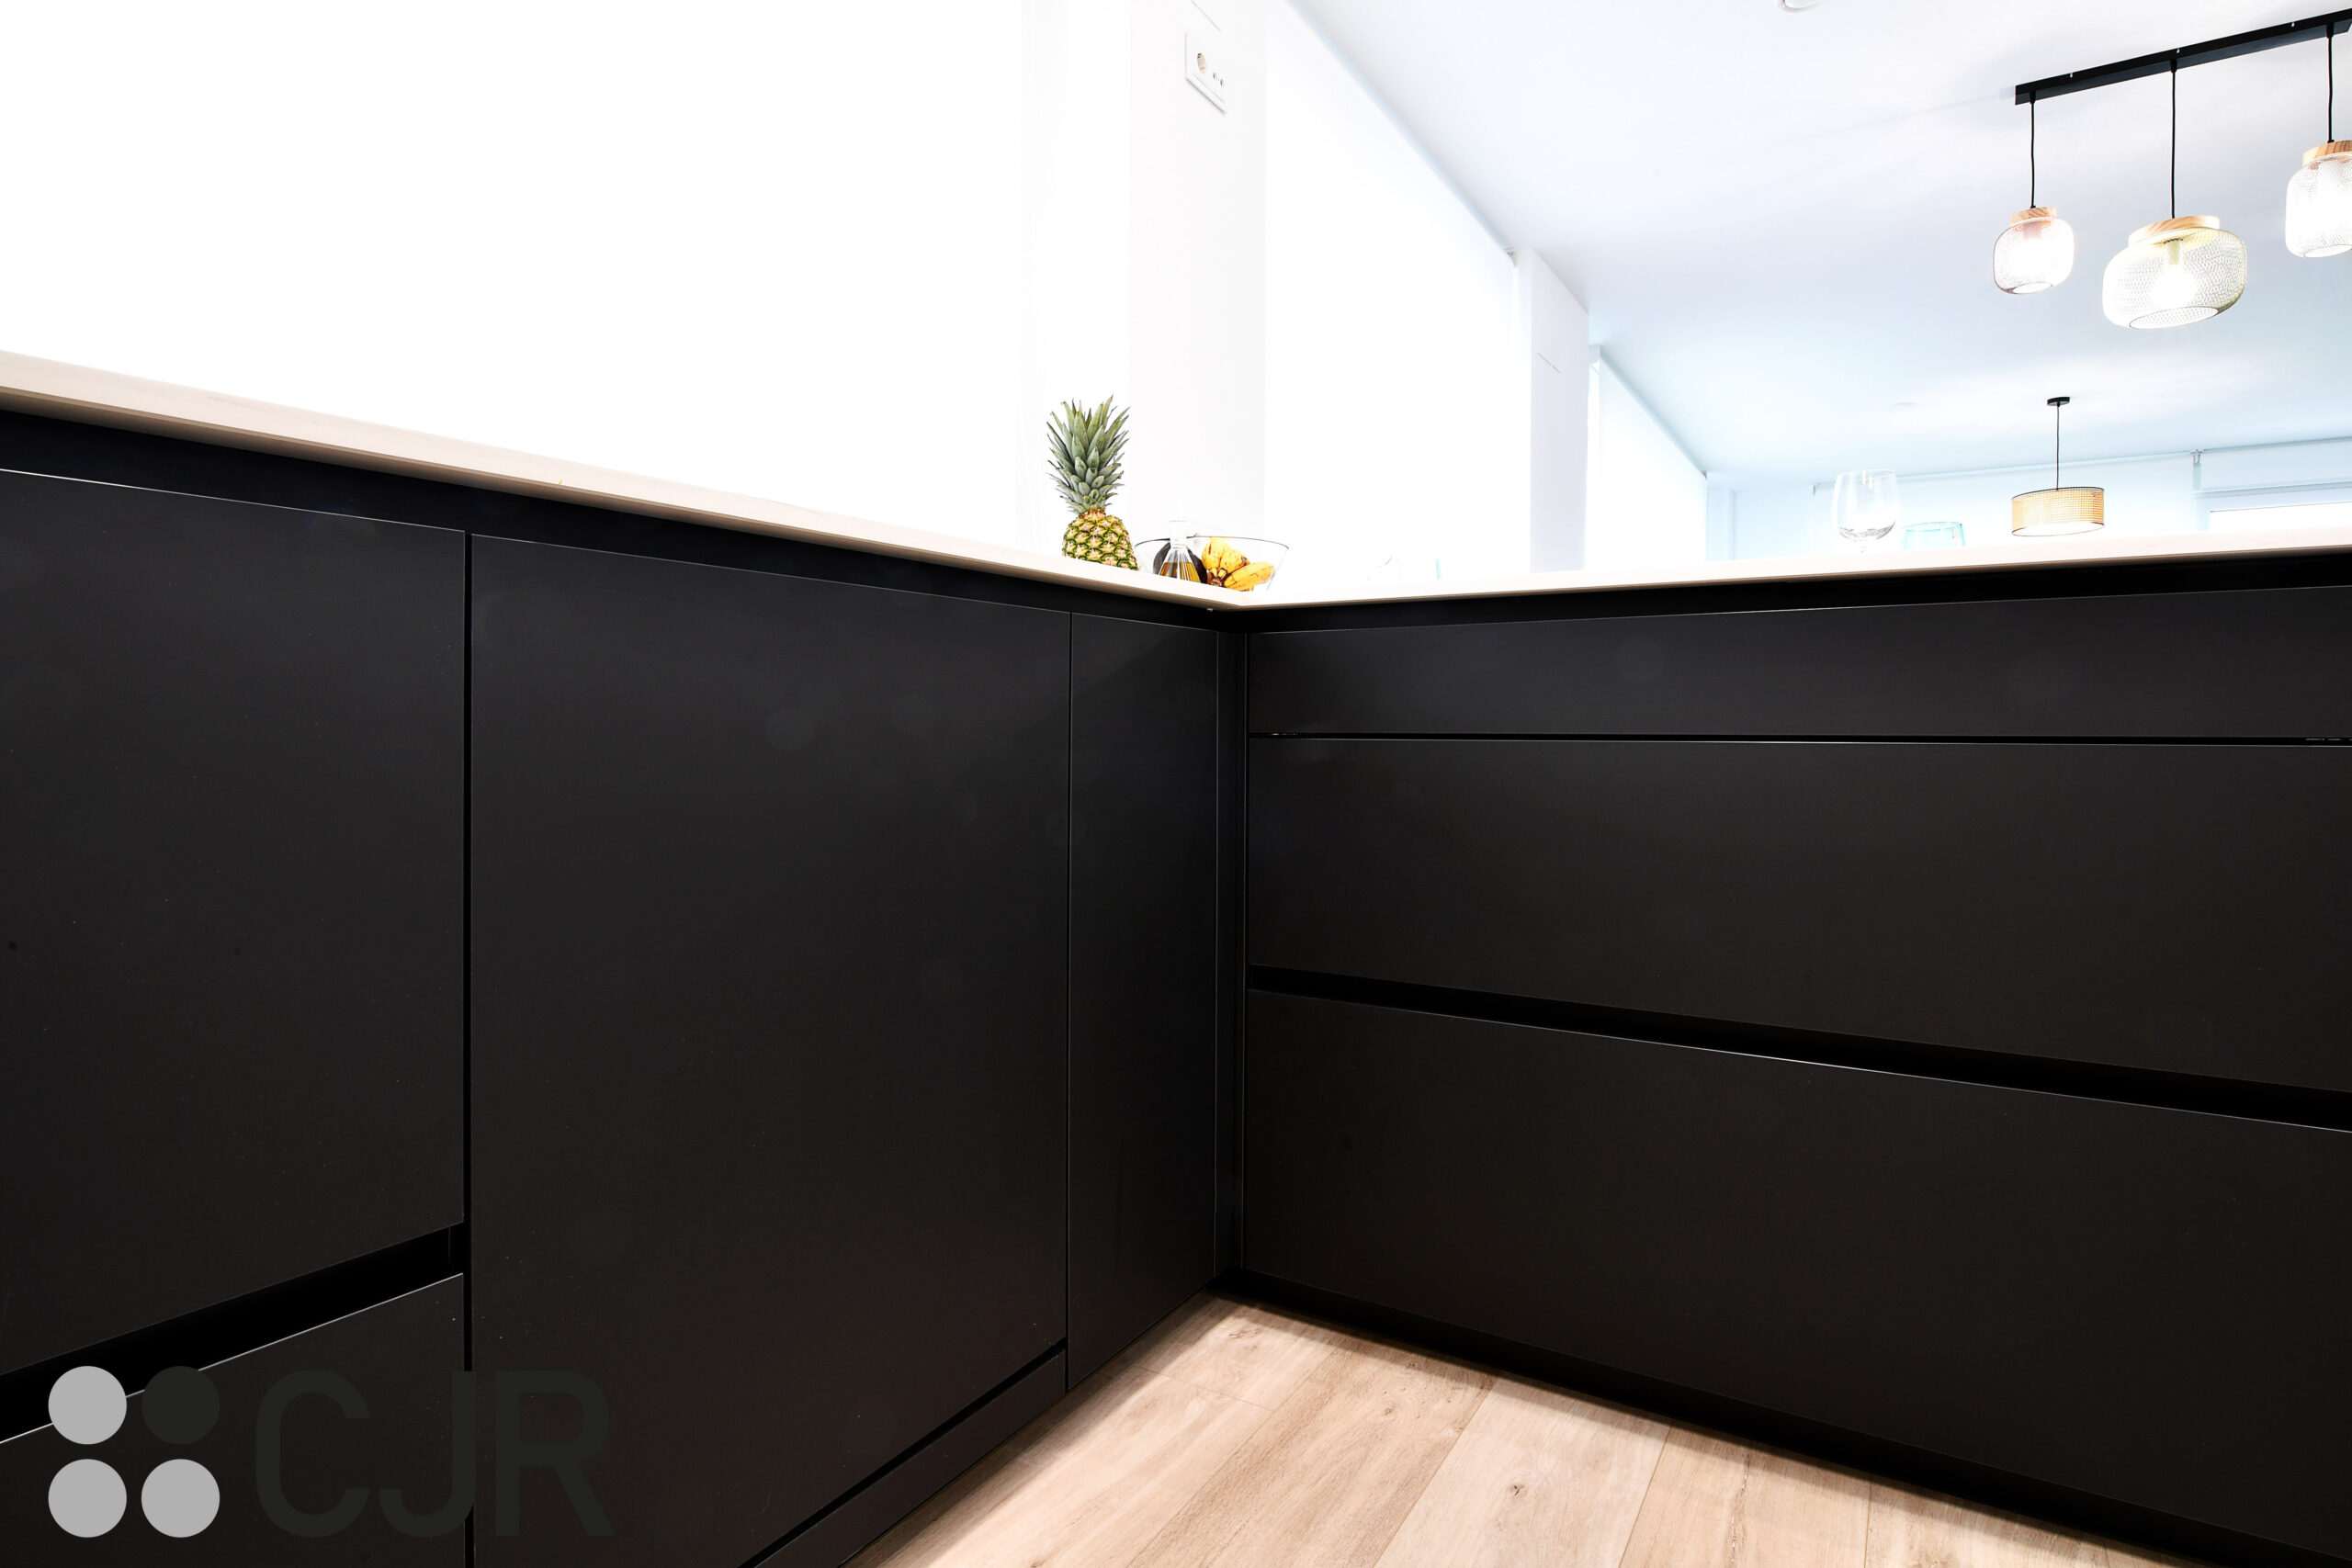 muebles bajos en color negro en cocina madera cjr